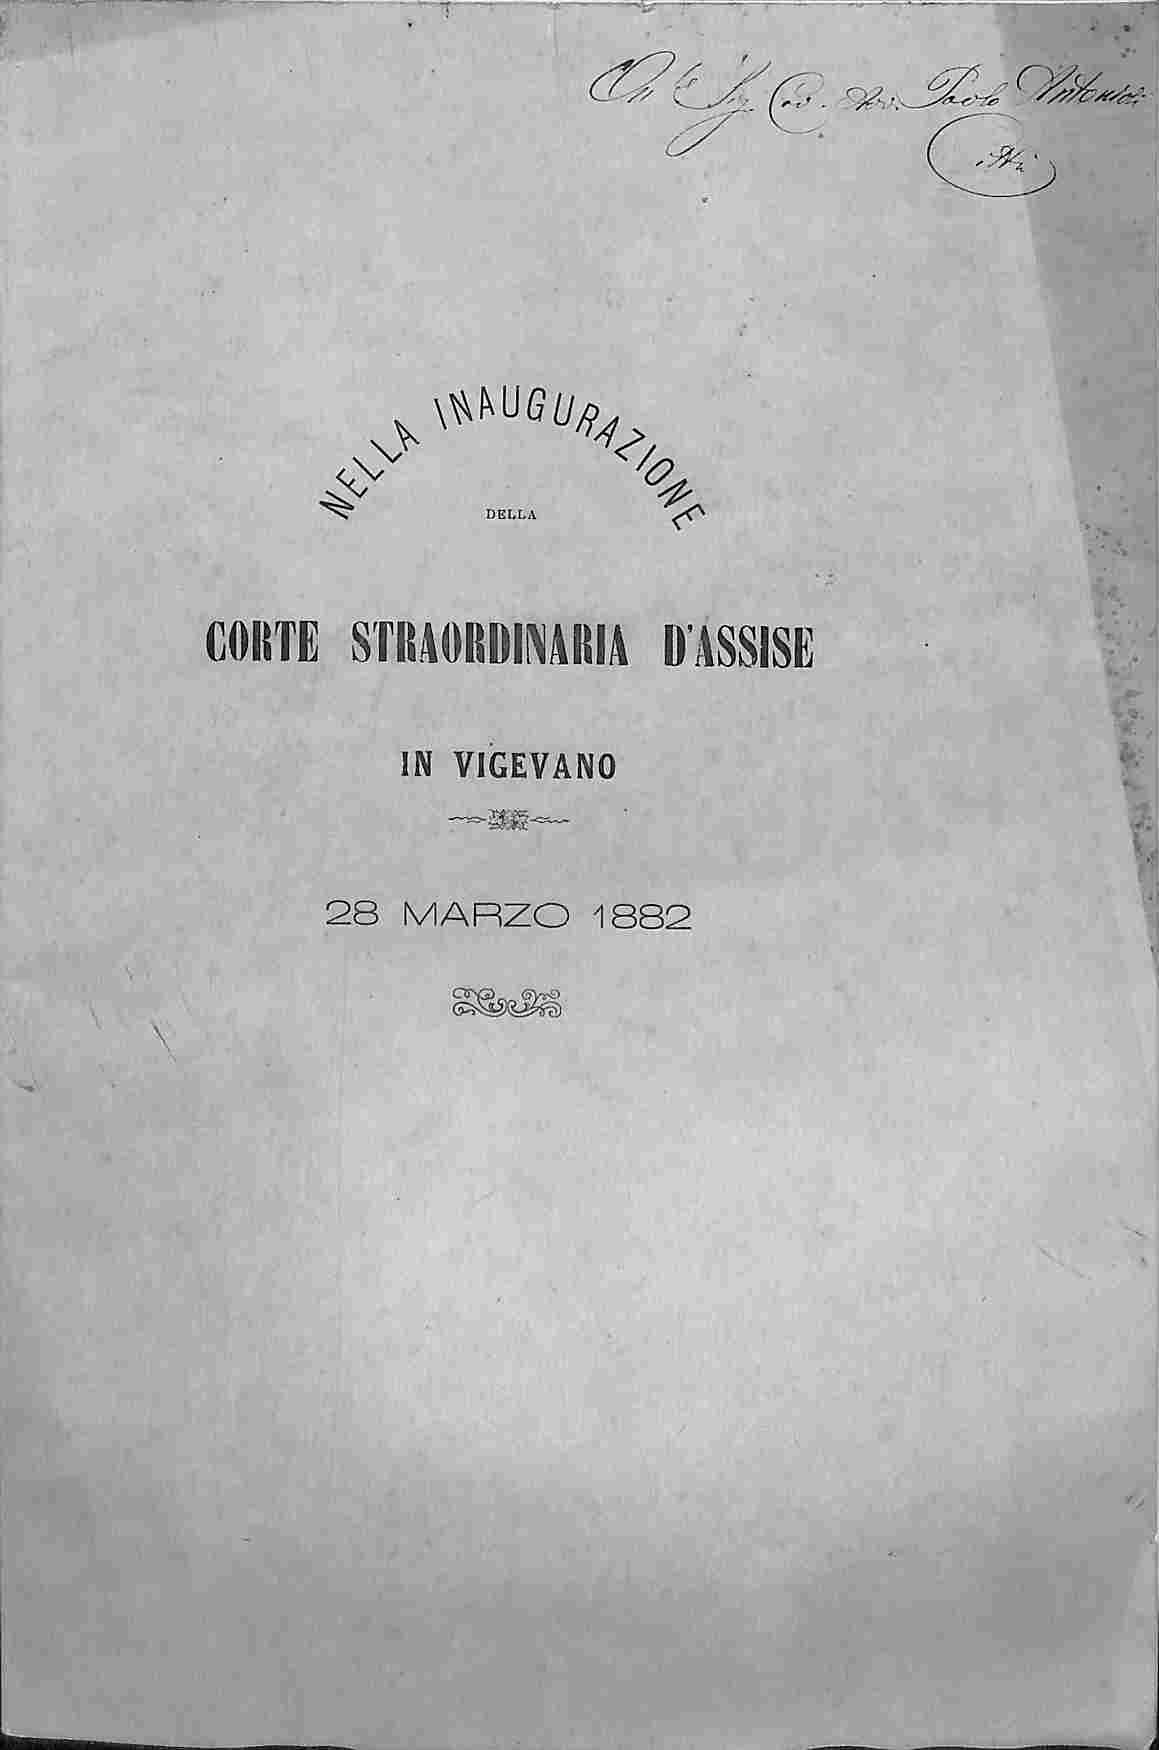 Nella inaugurazione della Corte straordinaria d'Assise in Vigevano 28 marzo 1882